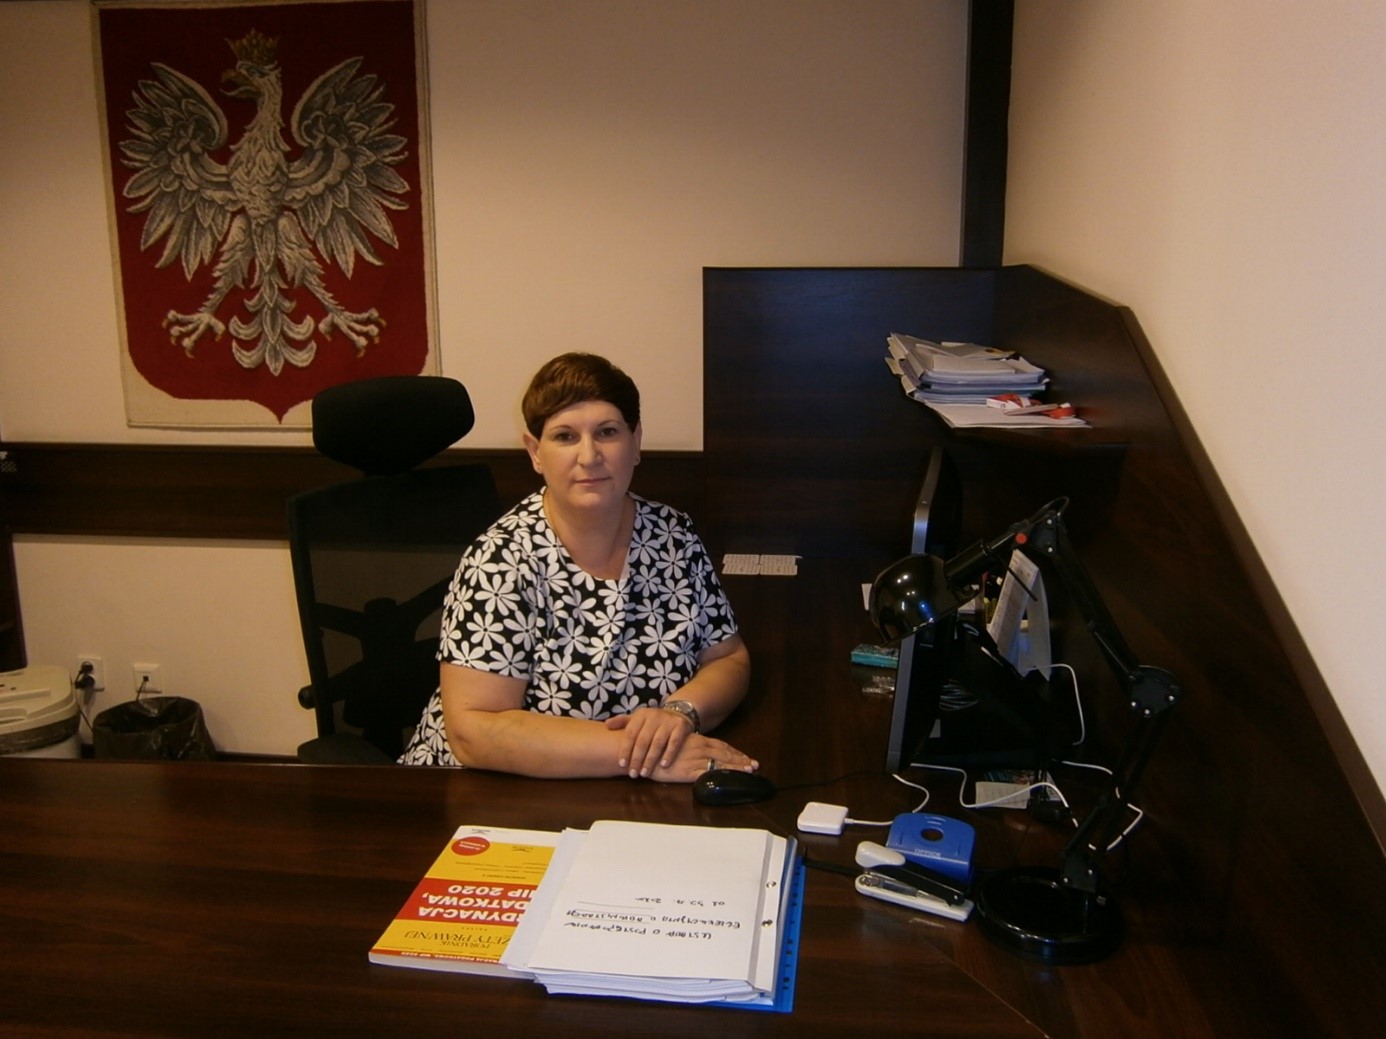 Wnętrze urzędu, przy biurku z dokumentami siedzi kobieta, patrzy w obiektyw, za nią wisi duże godło Polski 